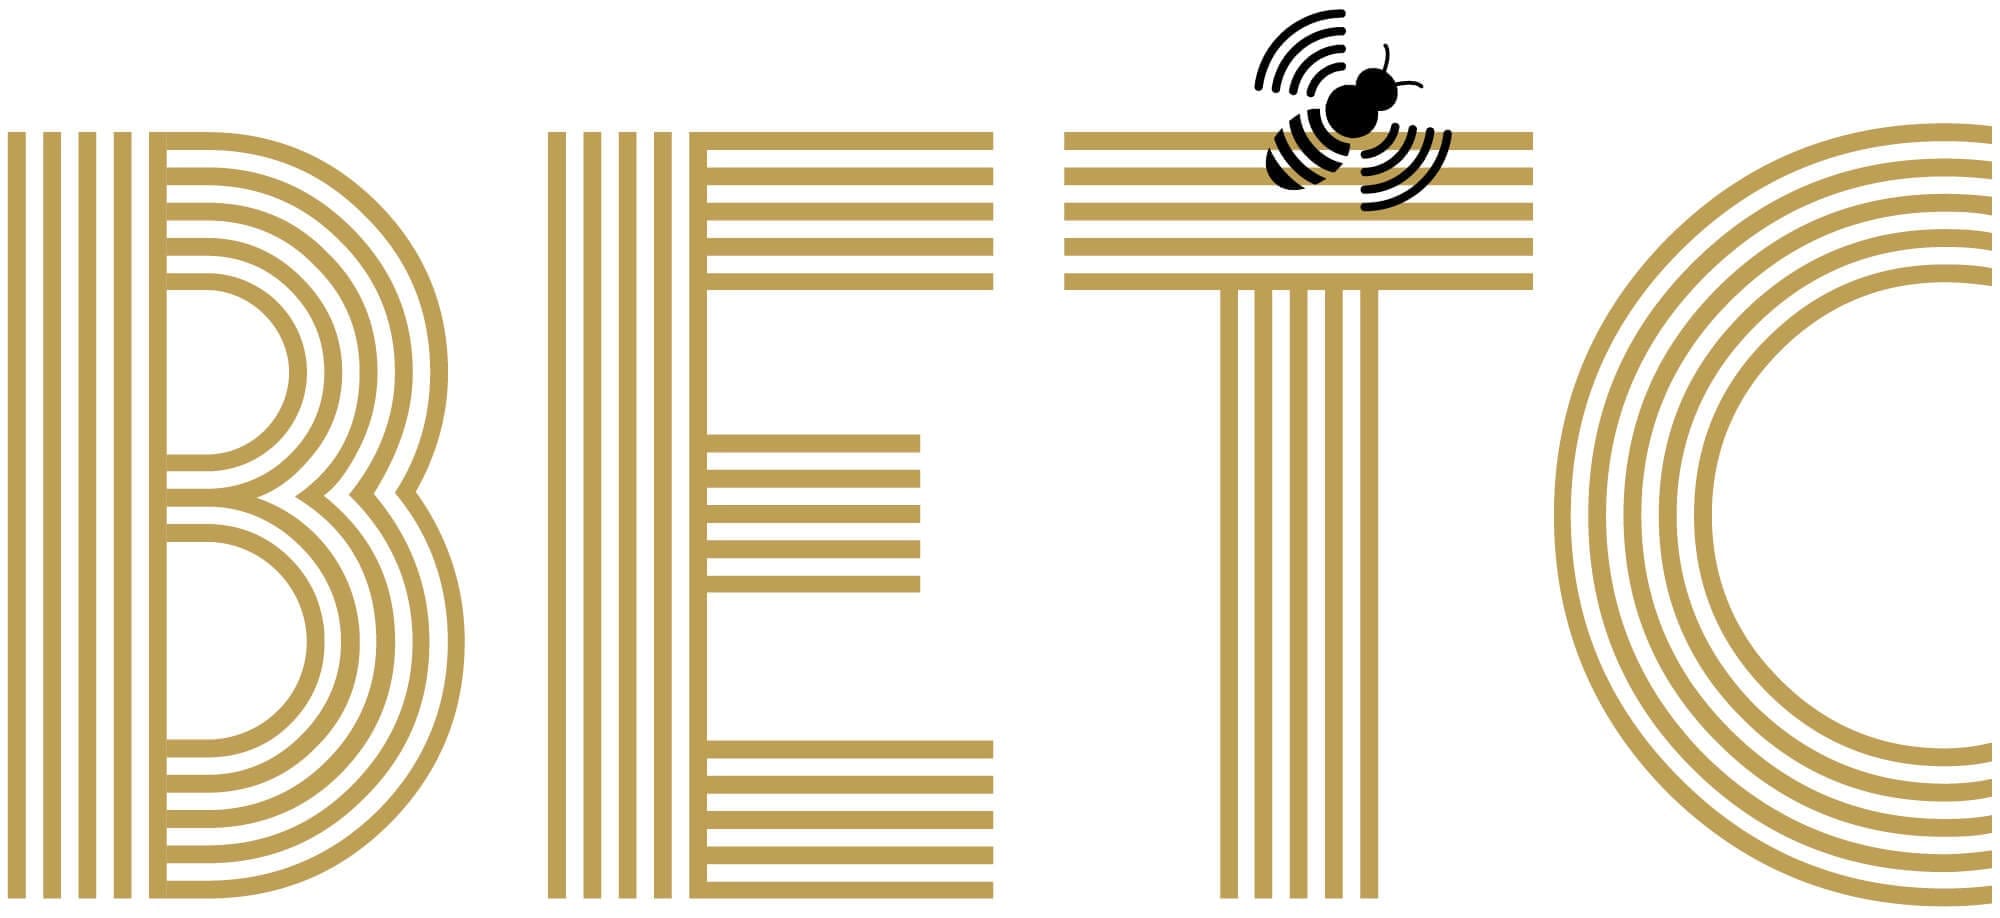 L'identité de l'agence de publicité BETC, deux couleurs or et noir, une typographie vivante et une abeille libre comme l’air, design IchetKar